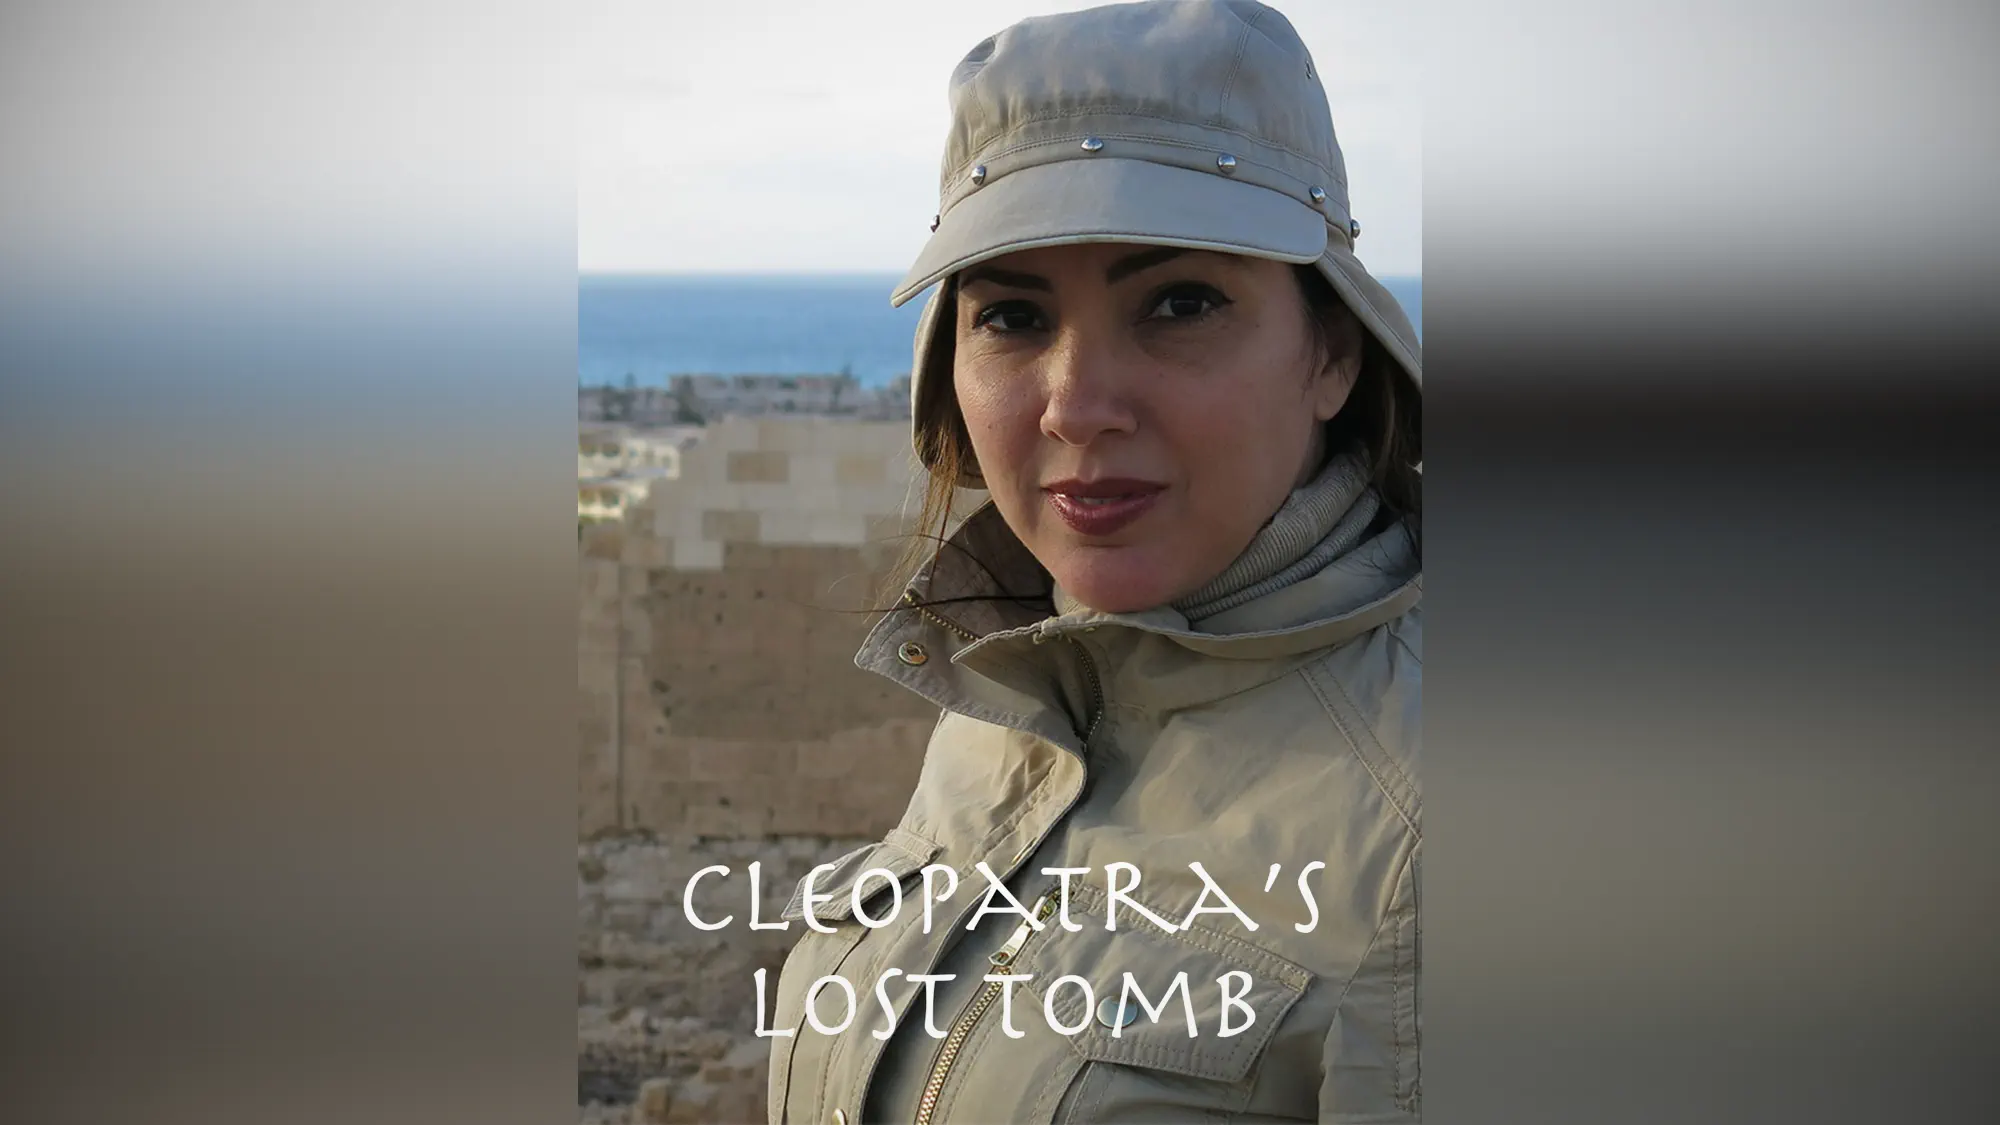 Caratula de Cleopatra's Lost Tomb (La tumba perdida de Cleopatra) 